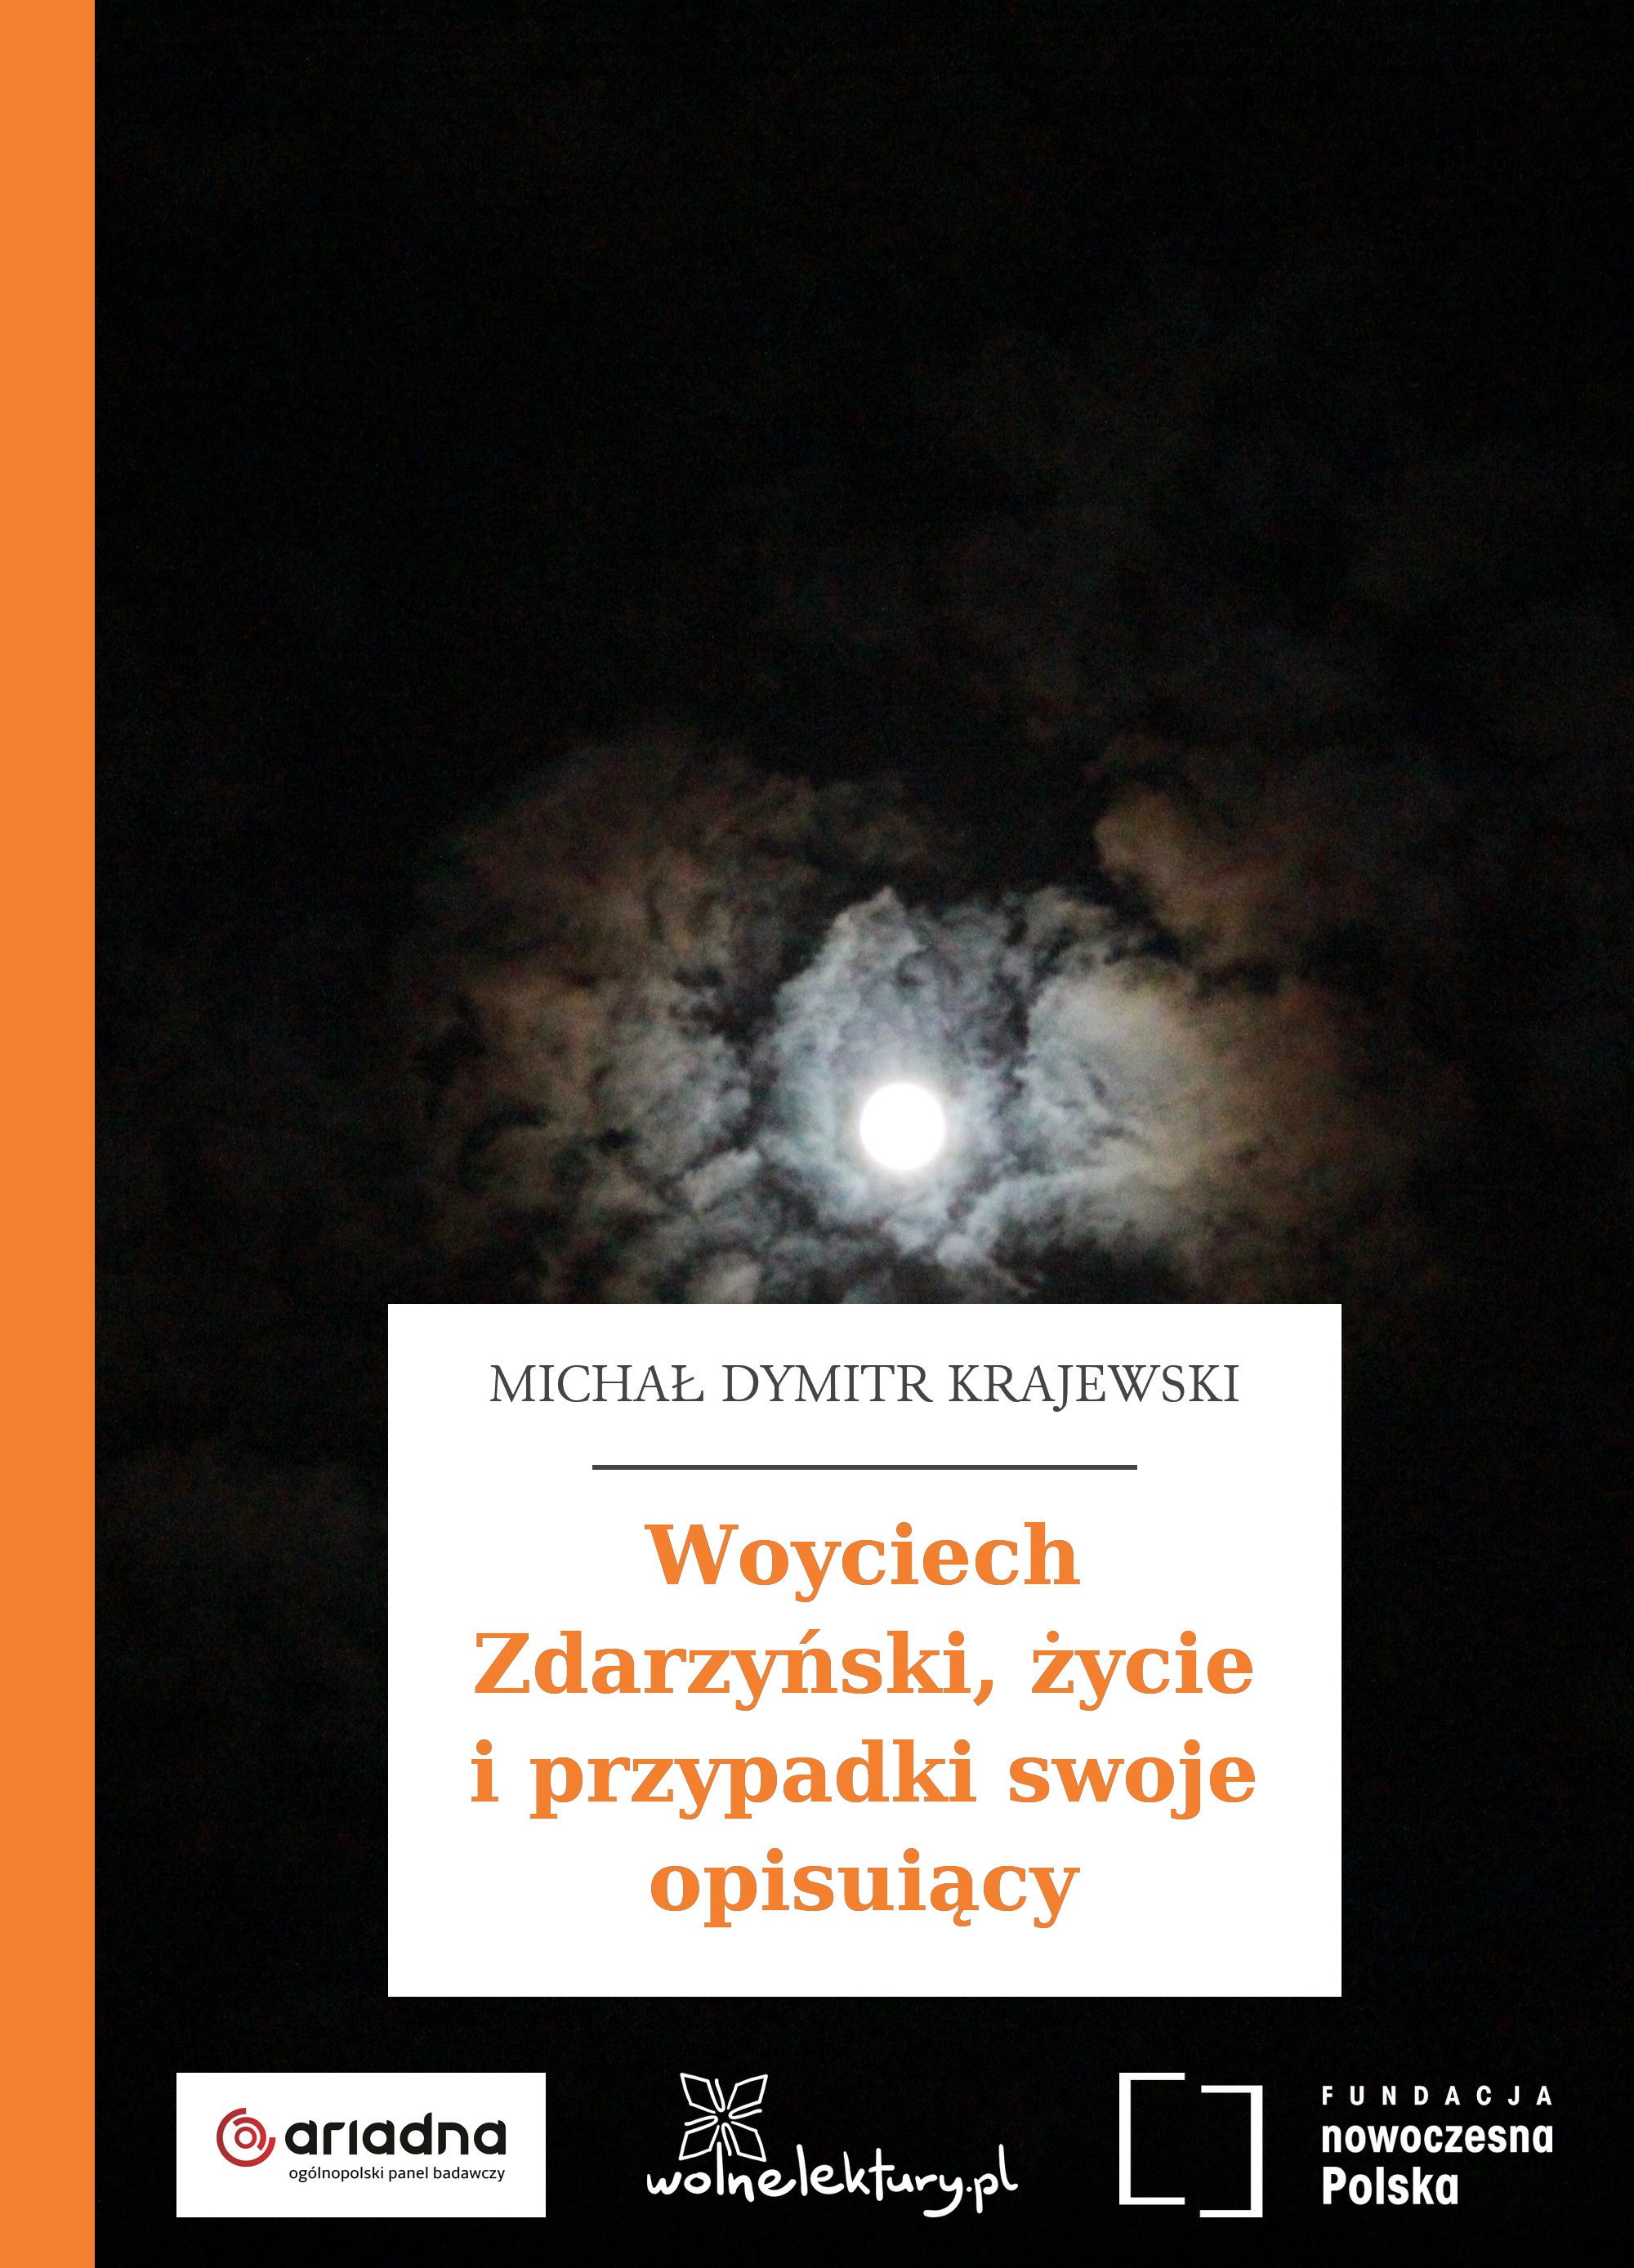 Woyciech Zdarzyński, życie i przypadki swoje opisujący